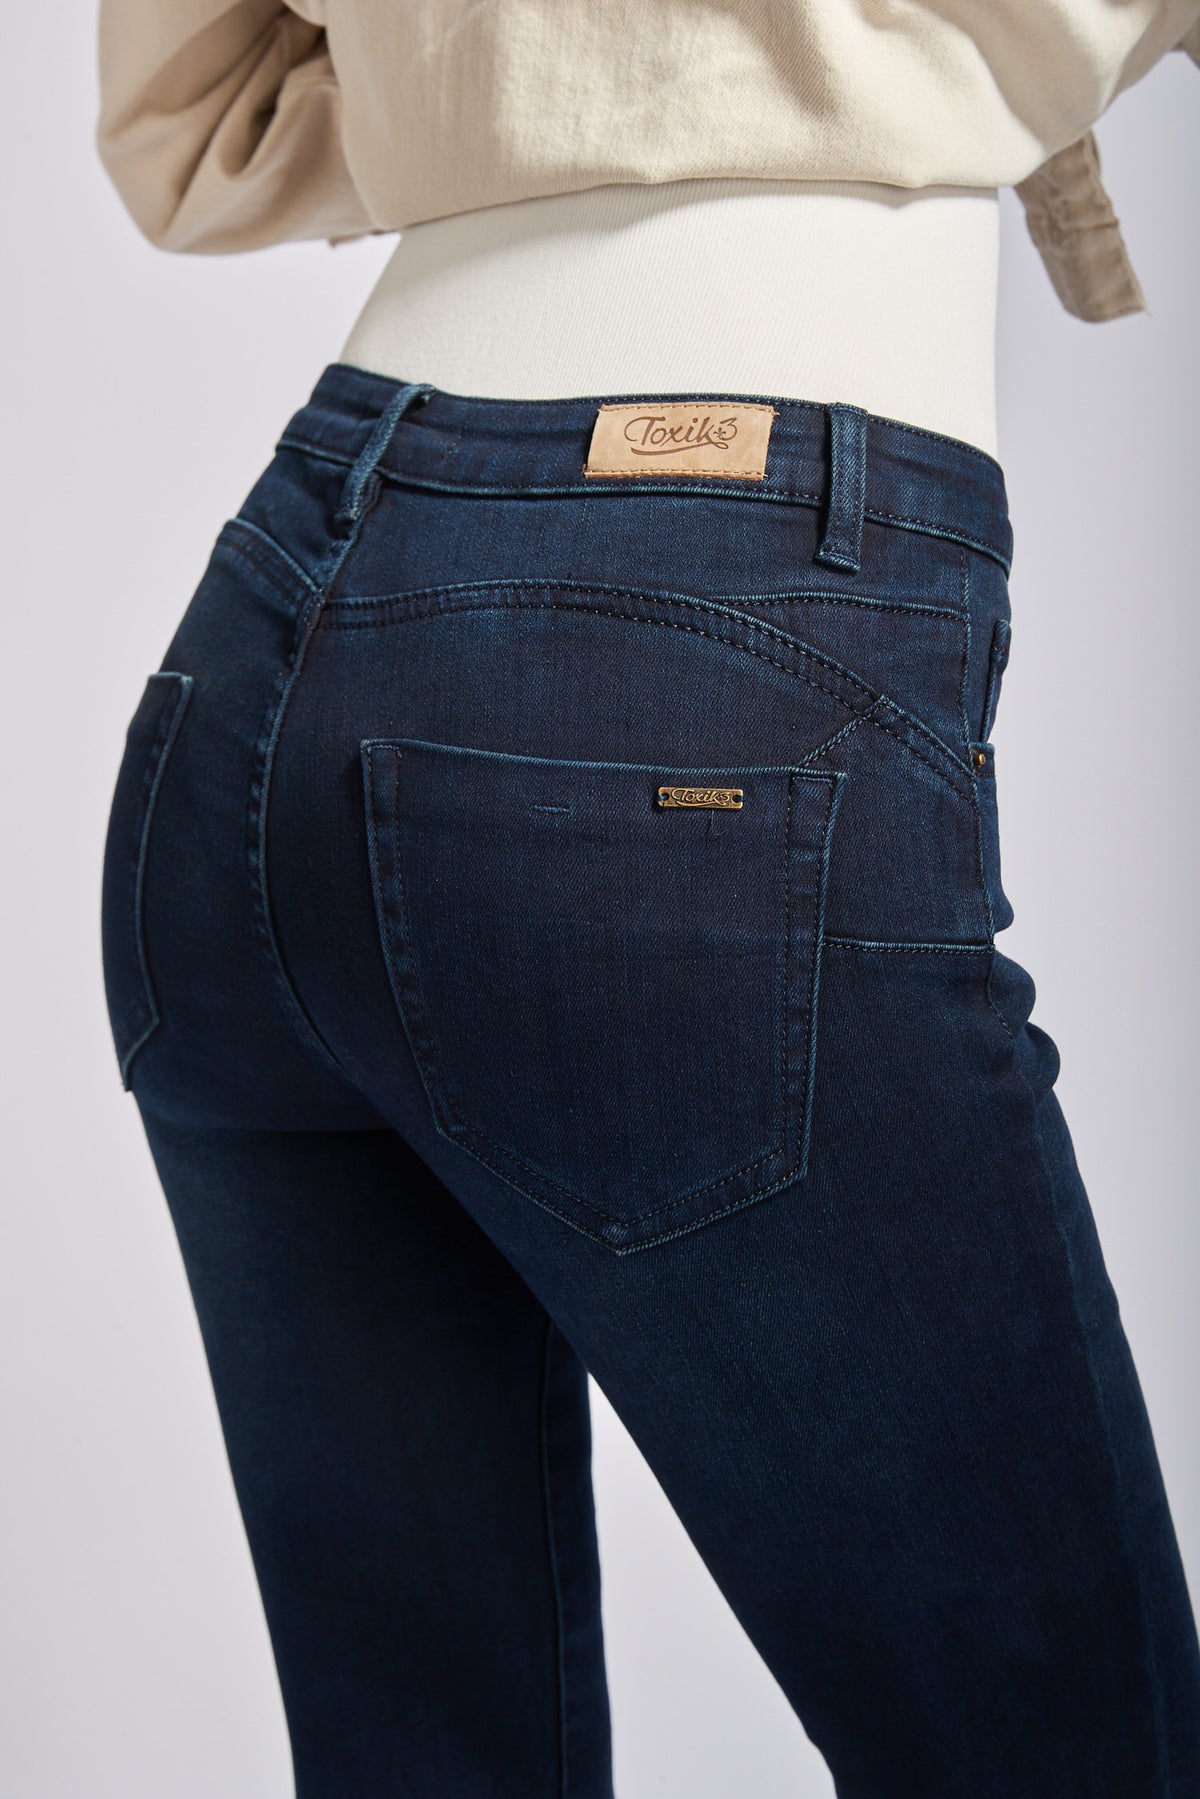 Molletoned interieur jeans - Kim